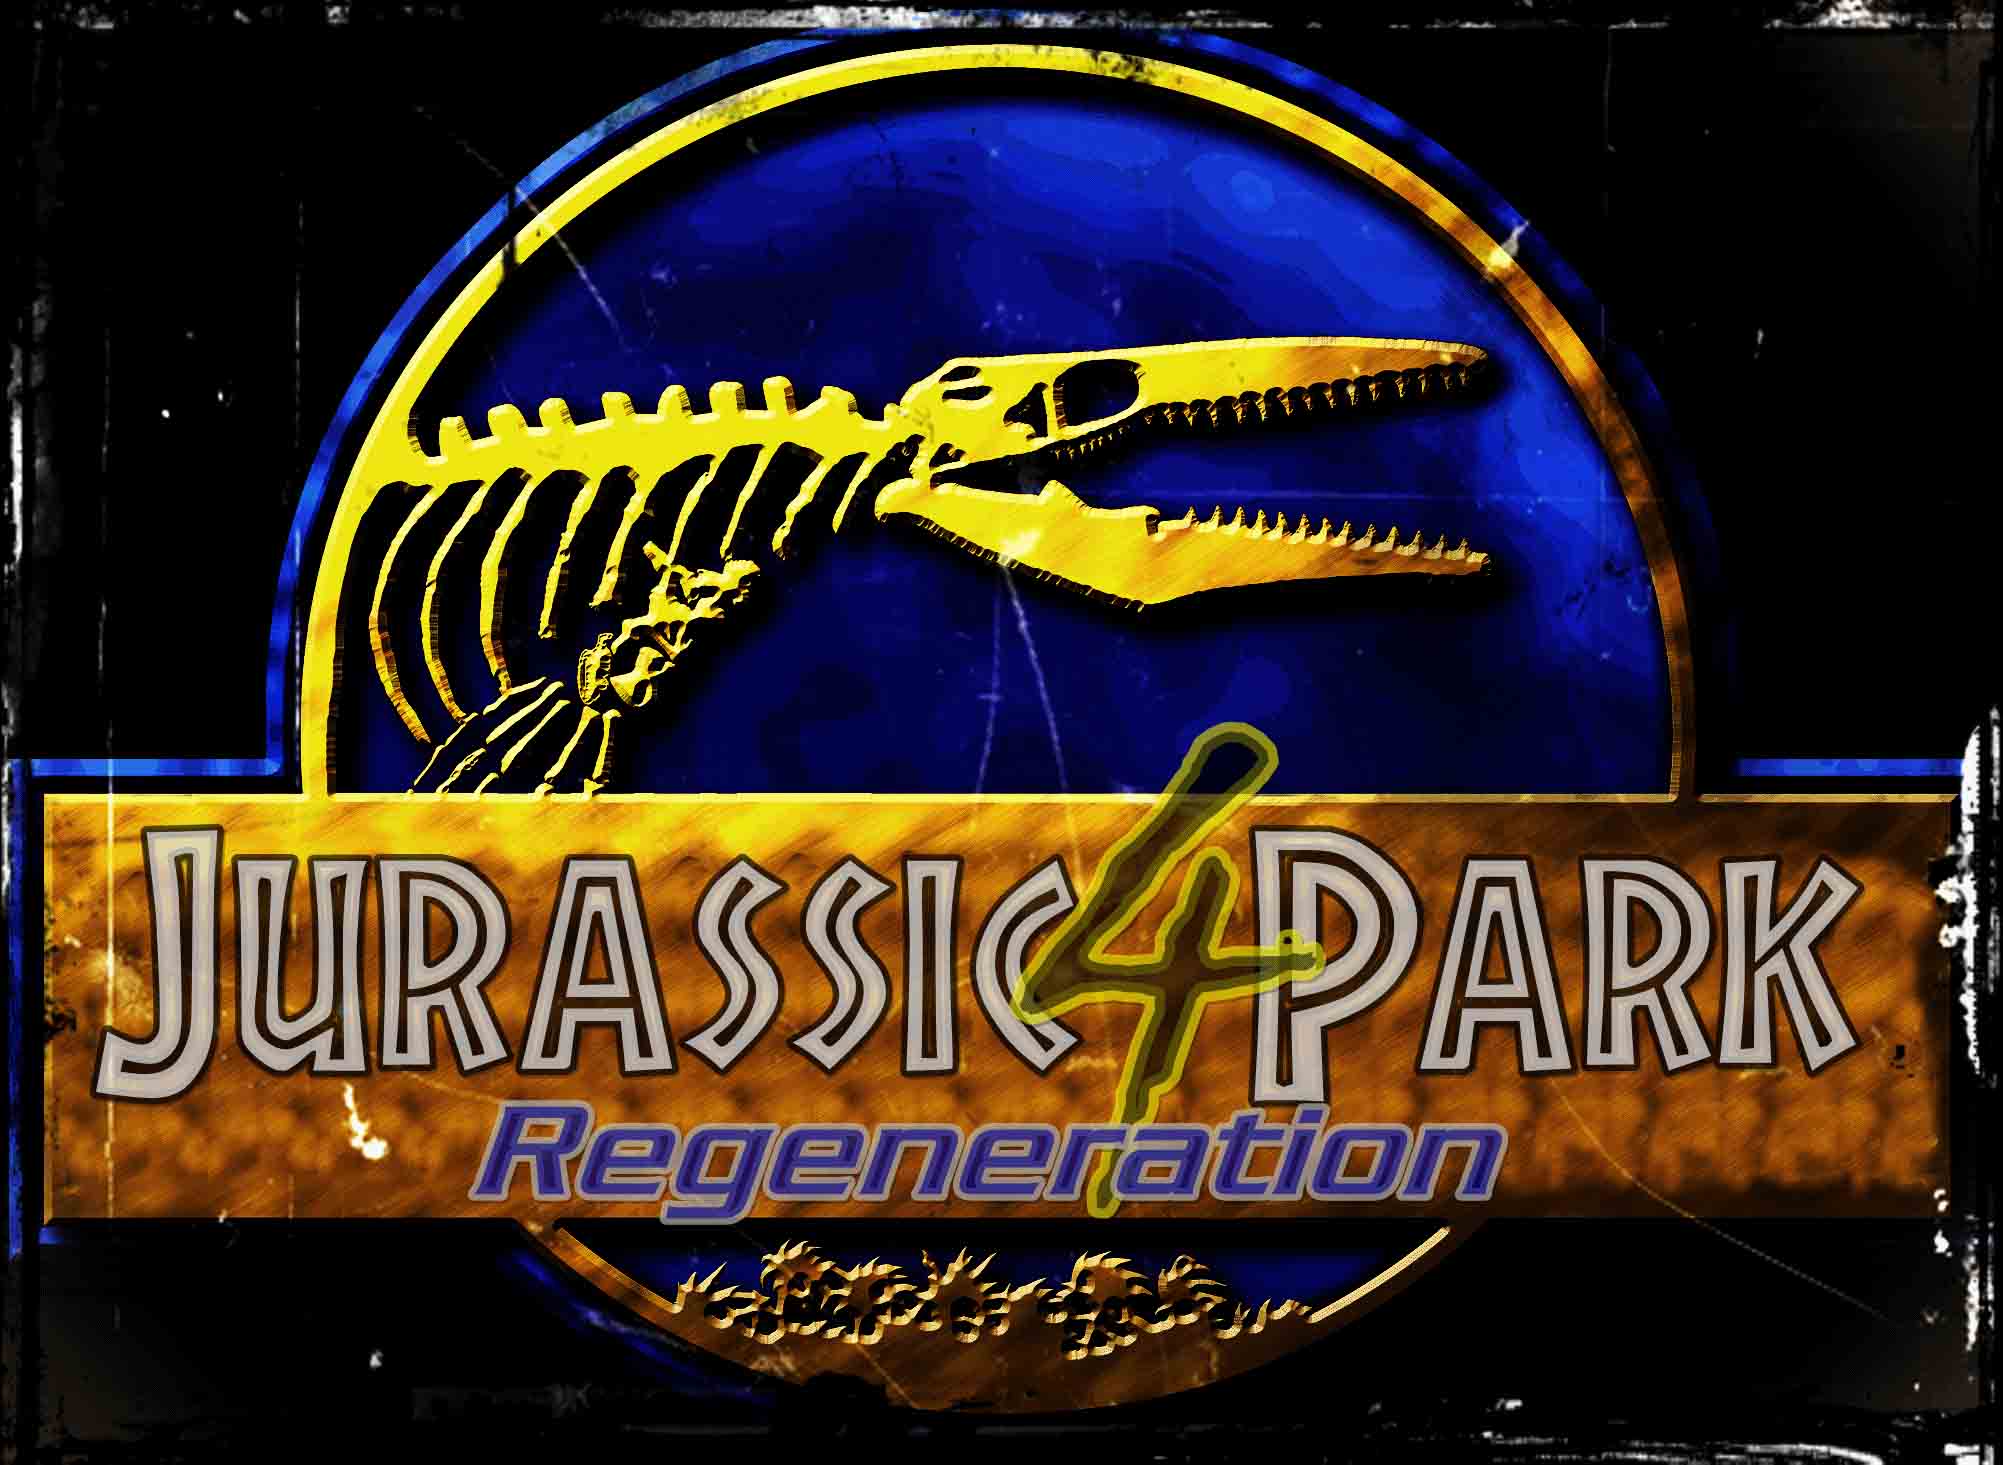 Jurassic Park T Rex Wallpaper. HD Wallpaper. More